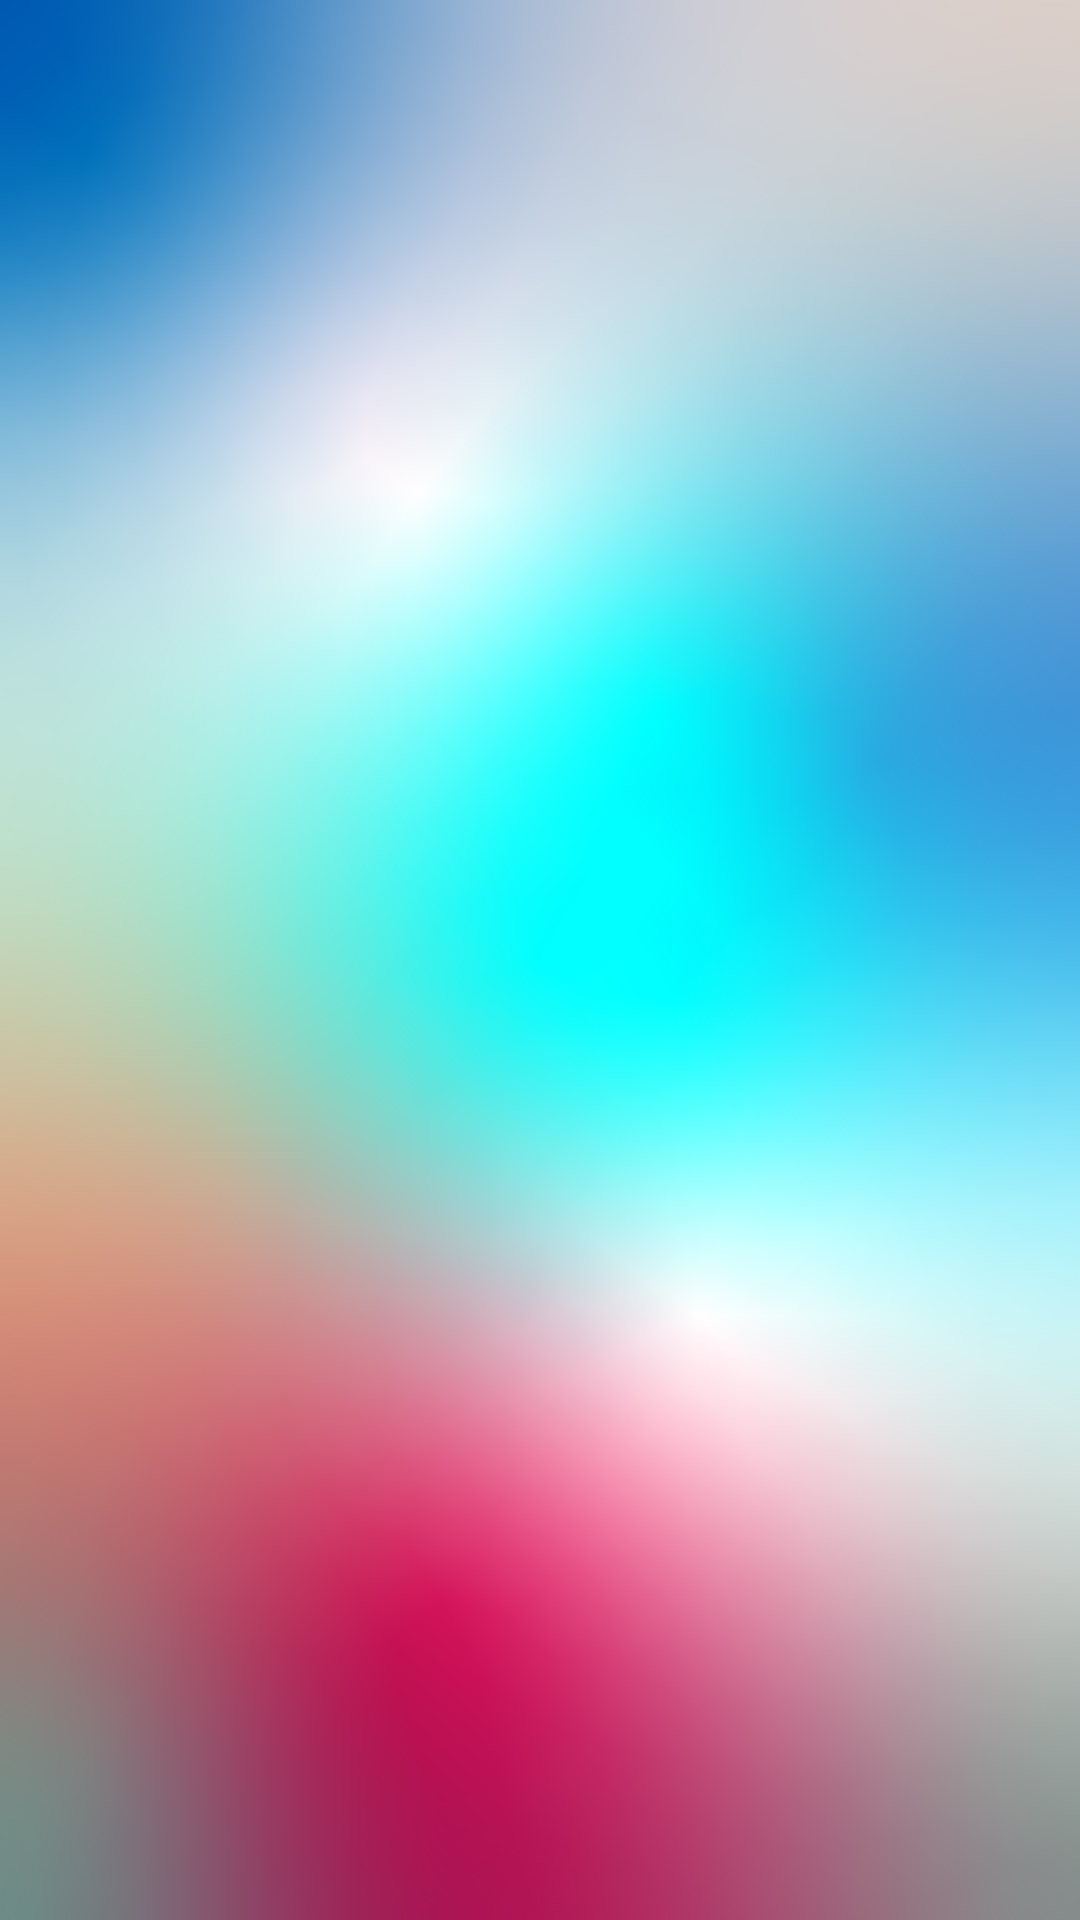 Instagram story Blur gradient background - veeForu